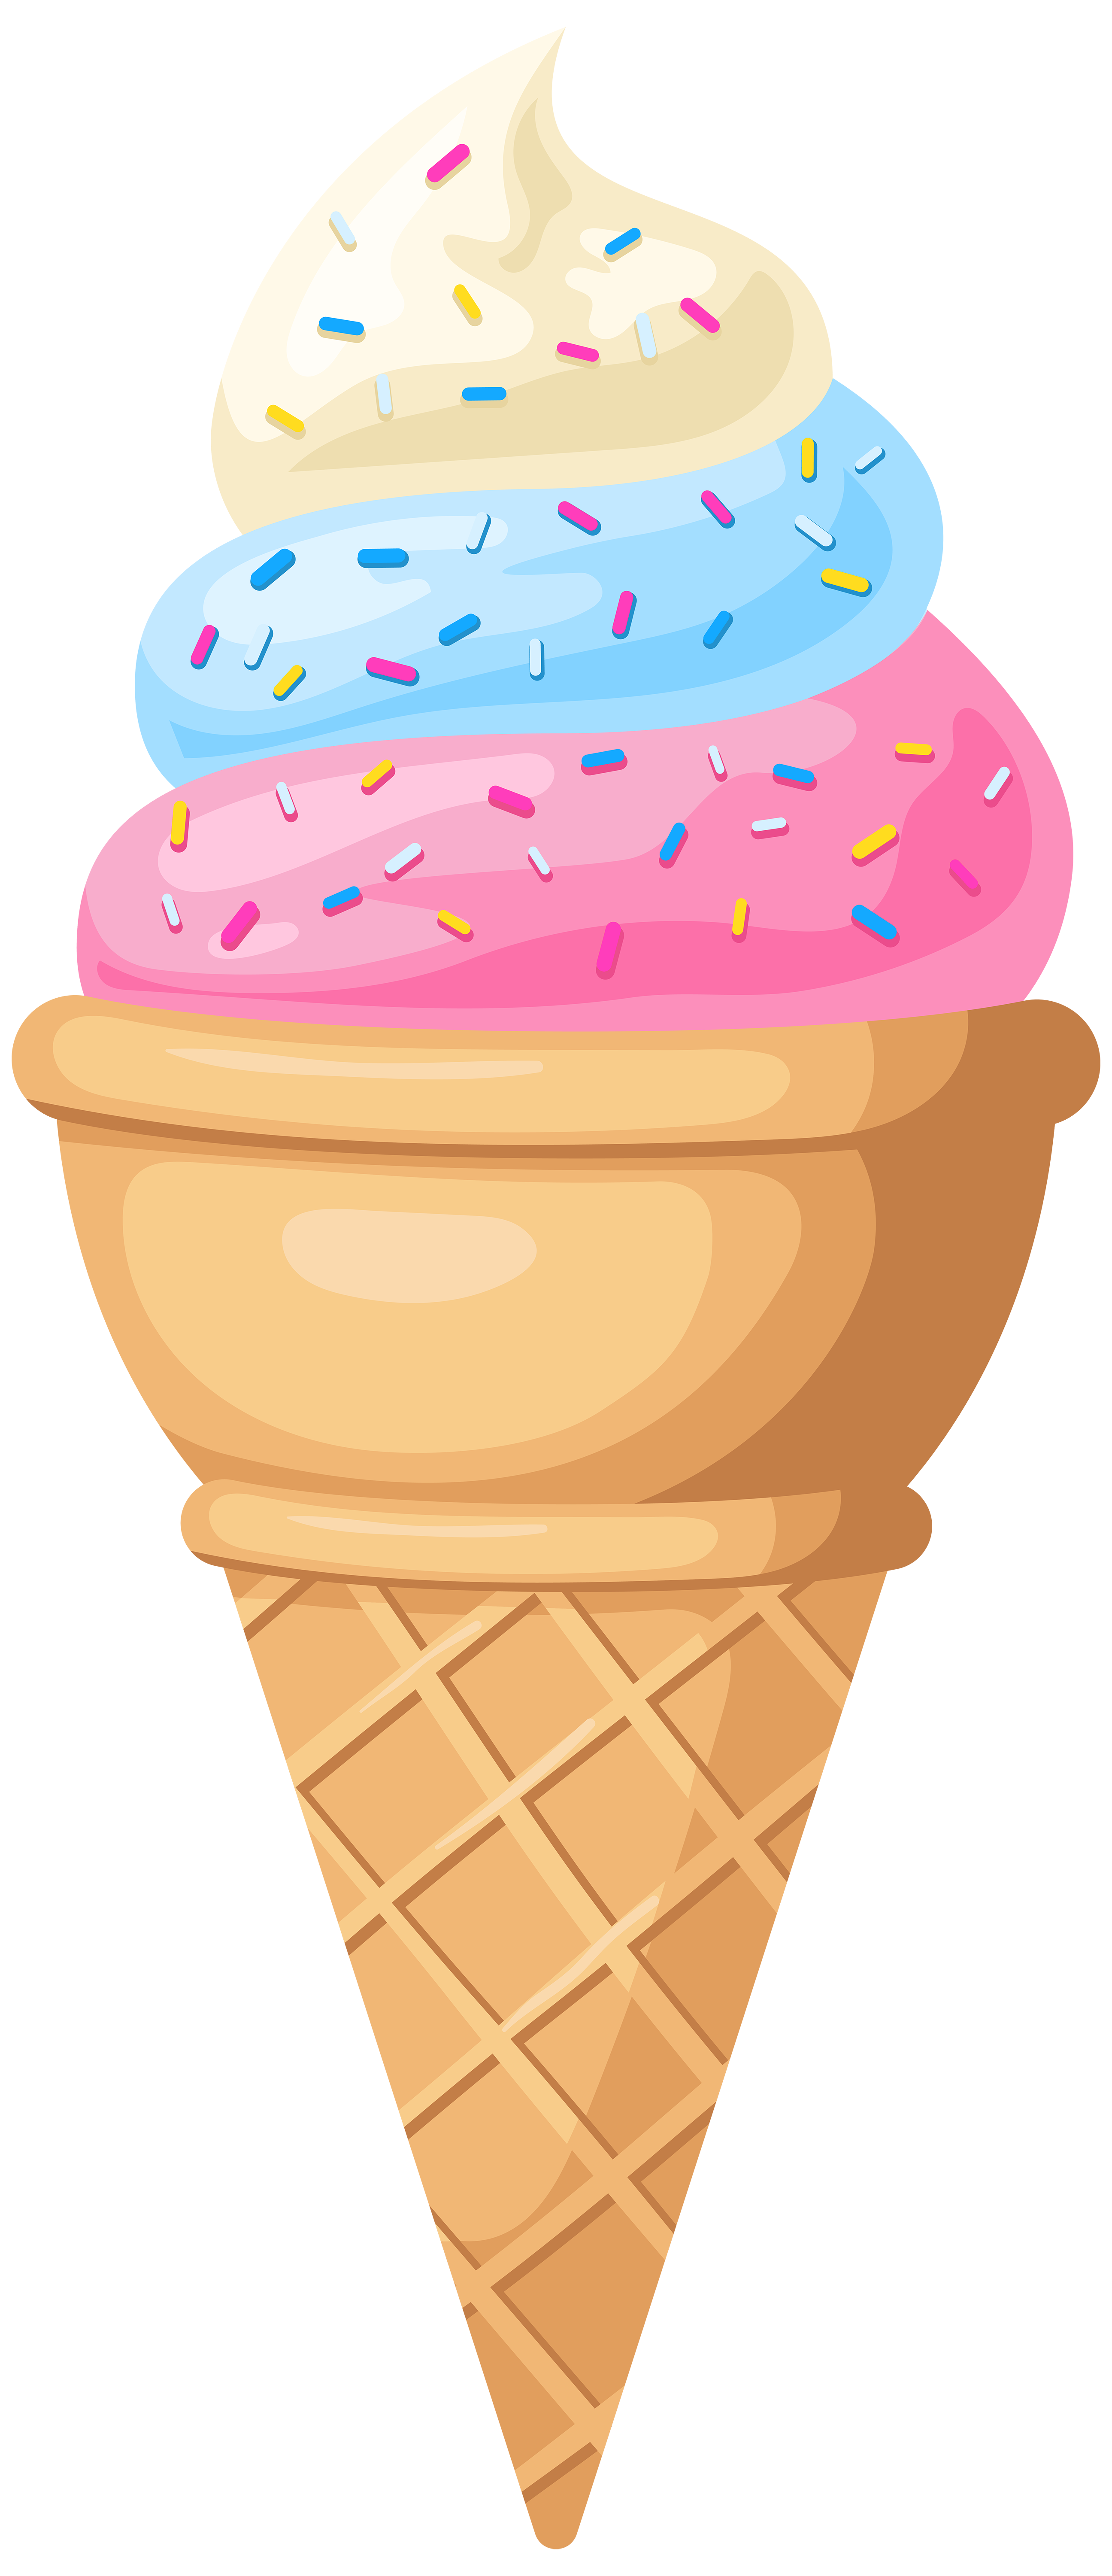 Icecream clipart ice cream cone, Icecream ice cream cone Transparent